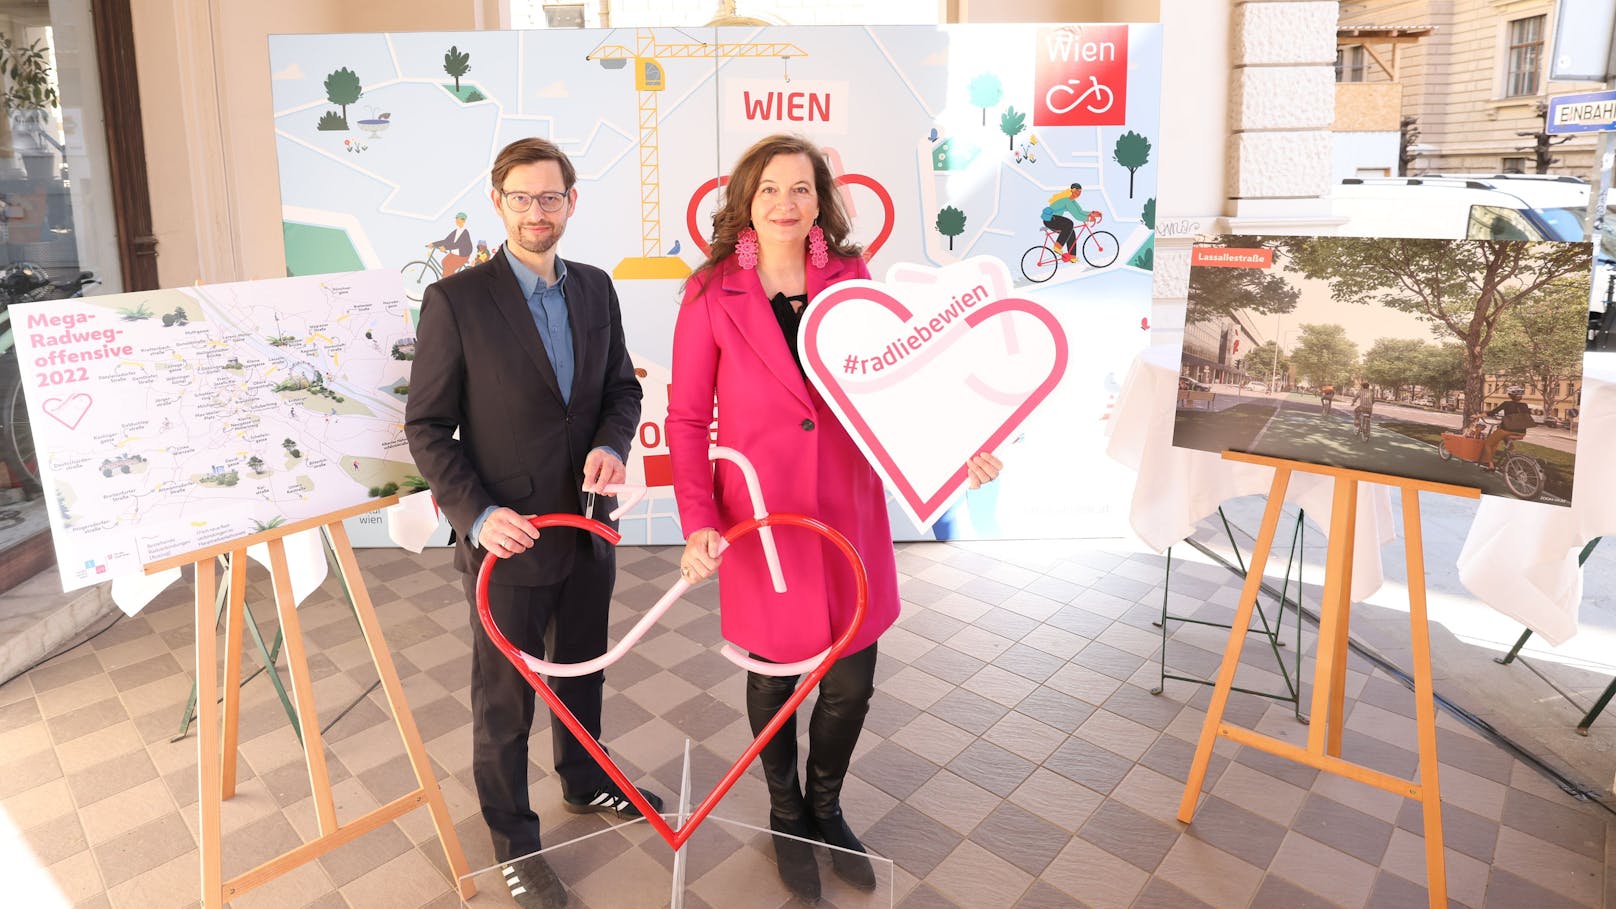 Planungsstadträtin Ulli Sima (SPÖ) präsentierte die neuen Pläne am Montag mit Mobilitätssprecherin Angelika Pipal-Leixner (Neos) und Radverkehrsbeauftragter Martin Blum.